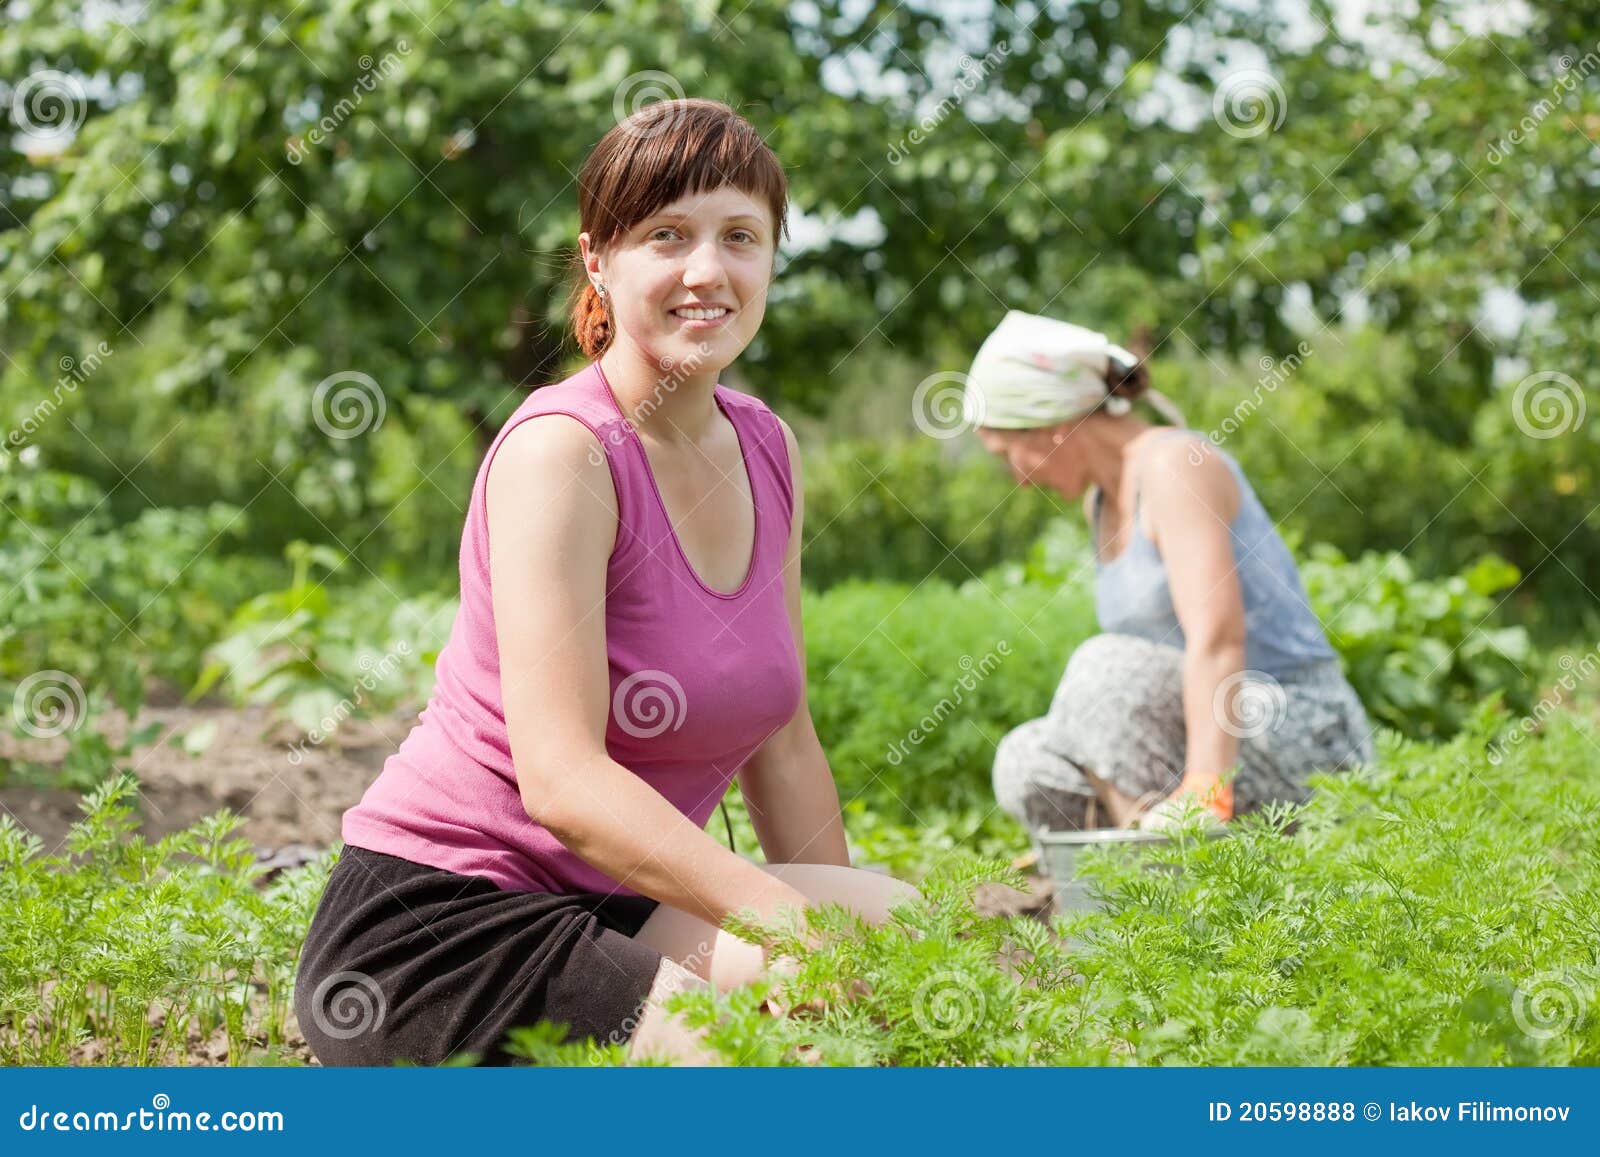 Тети хорошие видео. Женщина в огороде. Две женщины в огороде. Женщина трудится на огороде. Взрослые женщины в огороде.